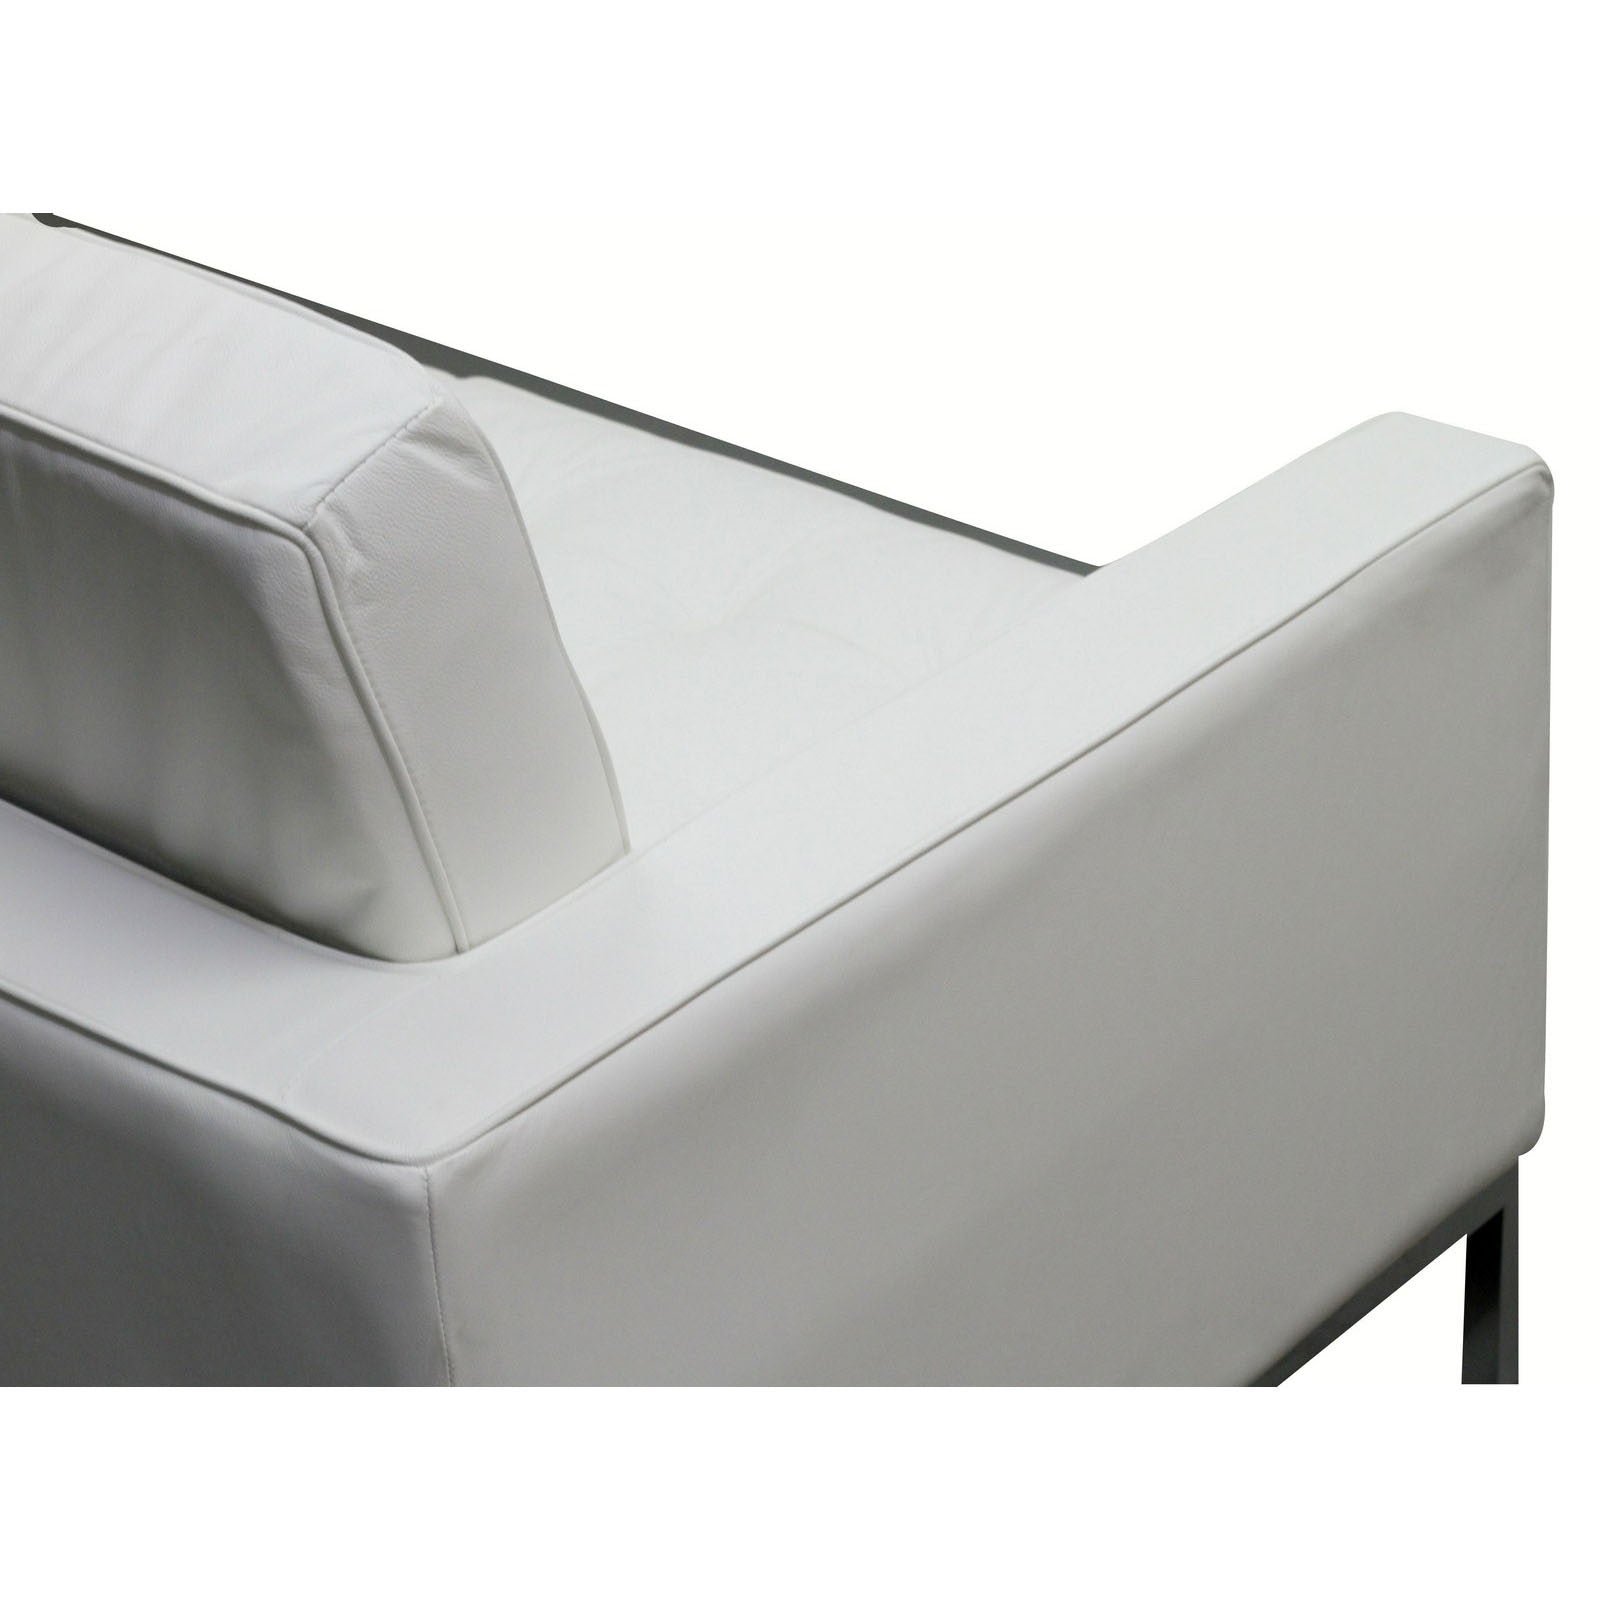 Modway Furniture Loft Leather Loveseat EEI-185-Minimal & Modern